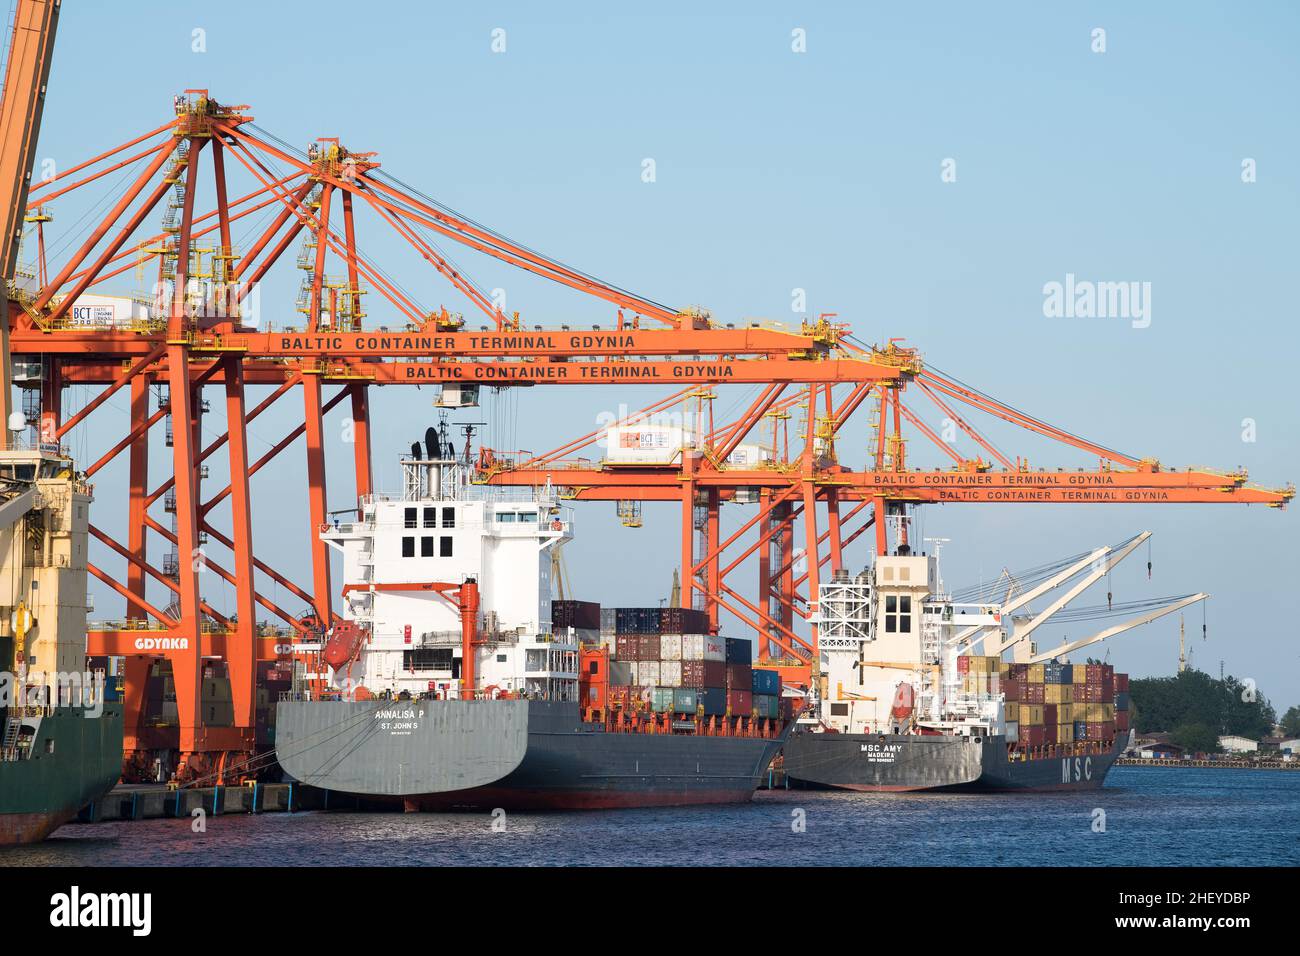 Baltic Container Terminal BCT in Gdynia, Poland © Wojciech Strozyk / Alamy Stock Photo Stock Photo